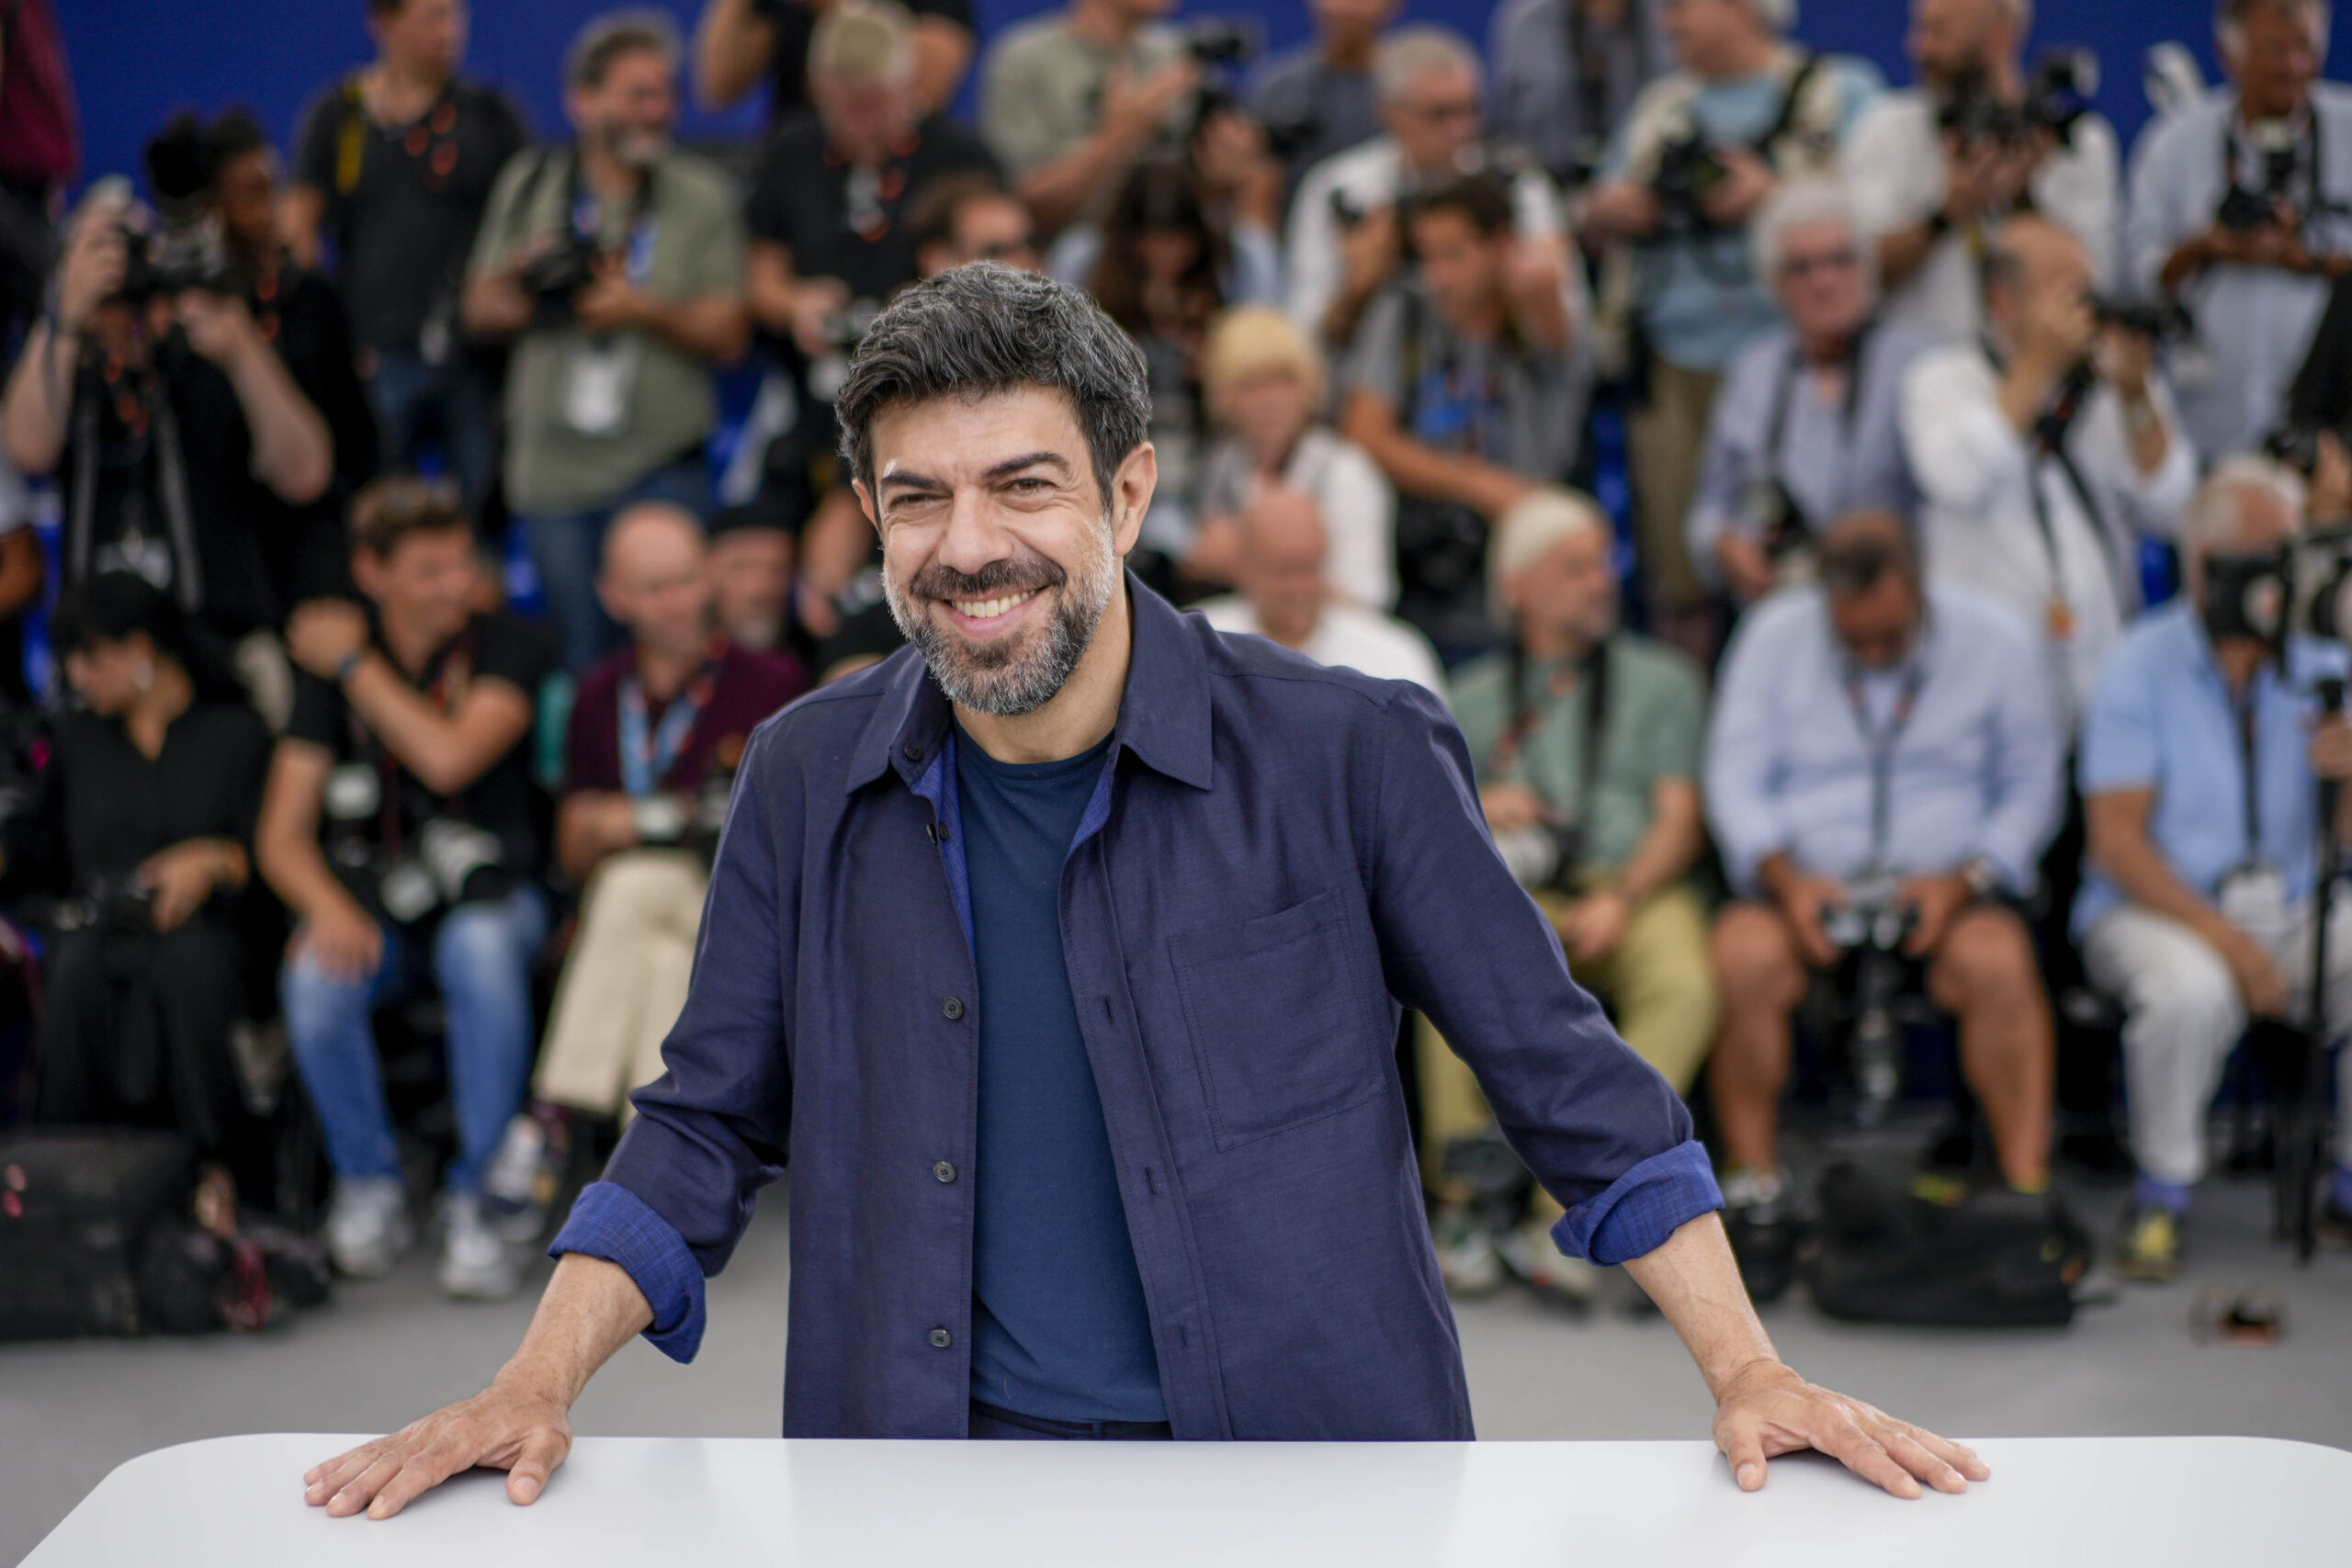 Martone e Favino conquistano il Festival di Cannes – FOTOGALLERY